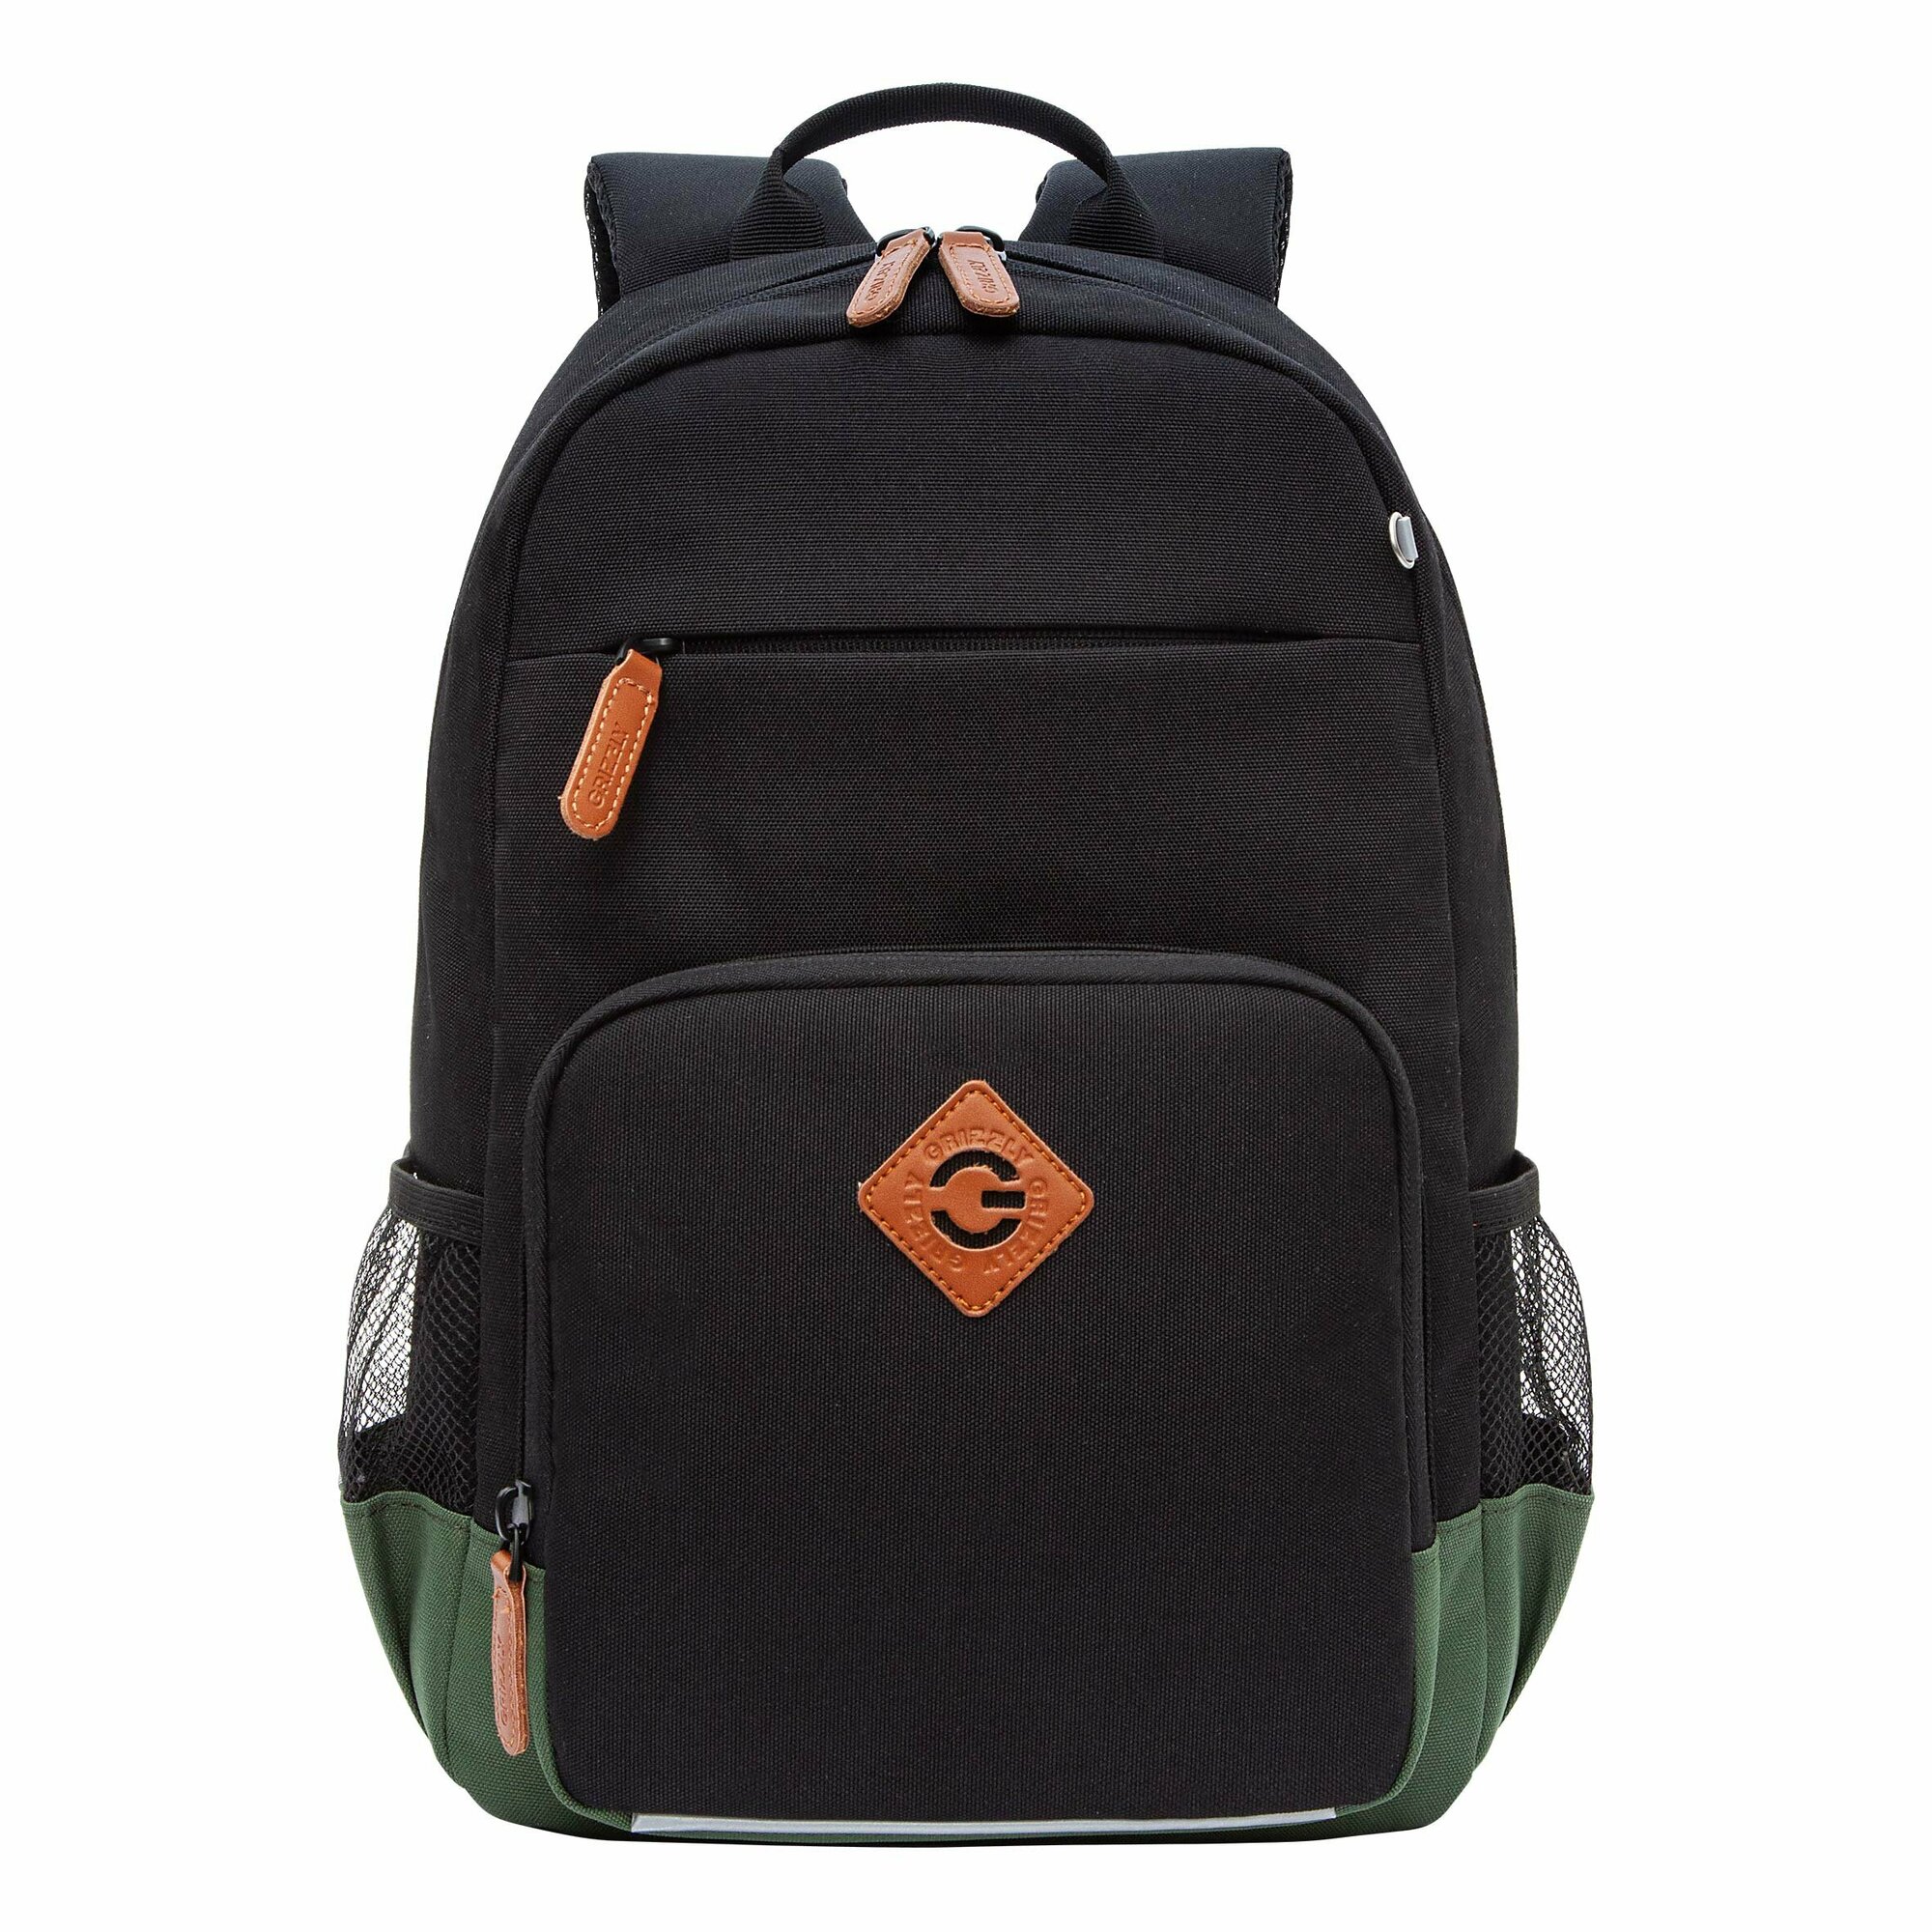 Рюкзак школьный GRIZZLY с карманом для ноутбука 13", анатомической спинкой, для мальчика RB-455-1/1